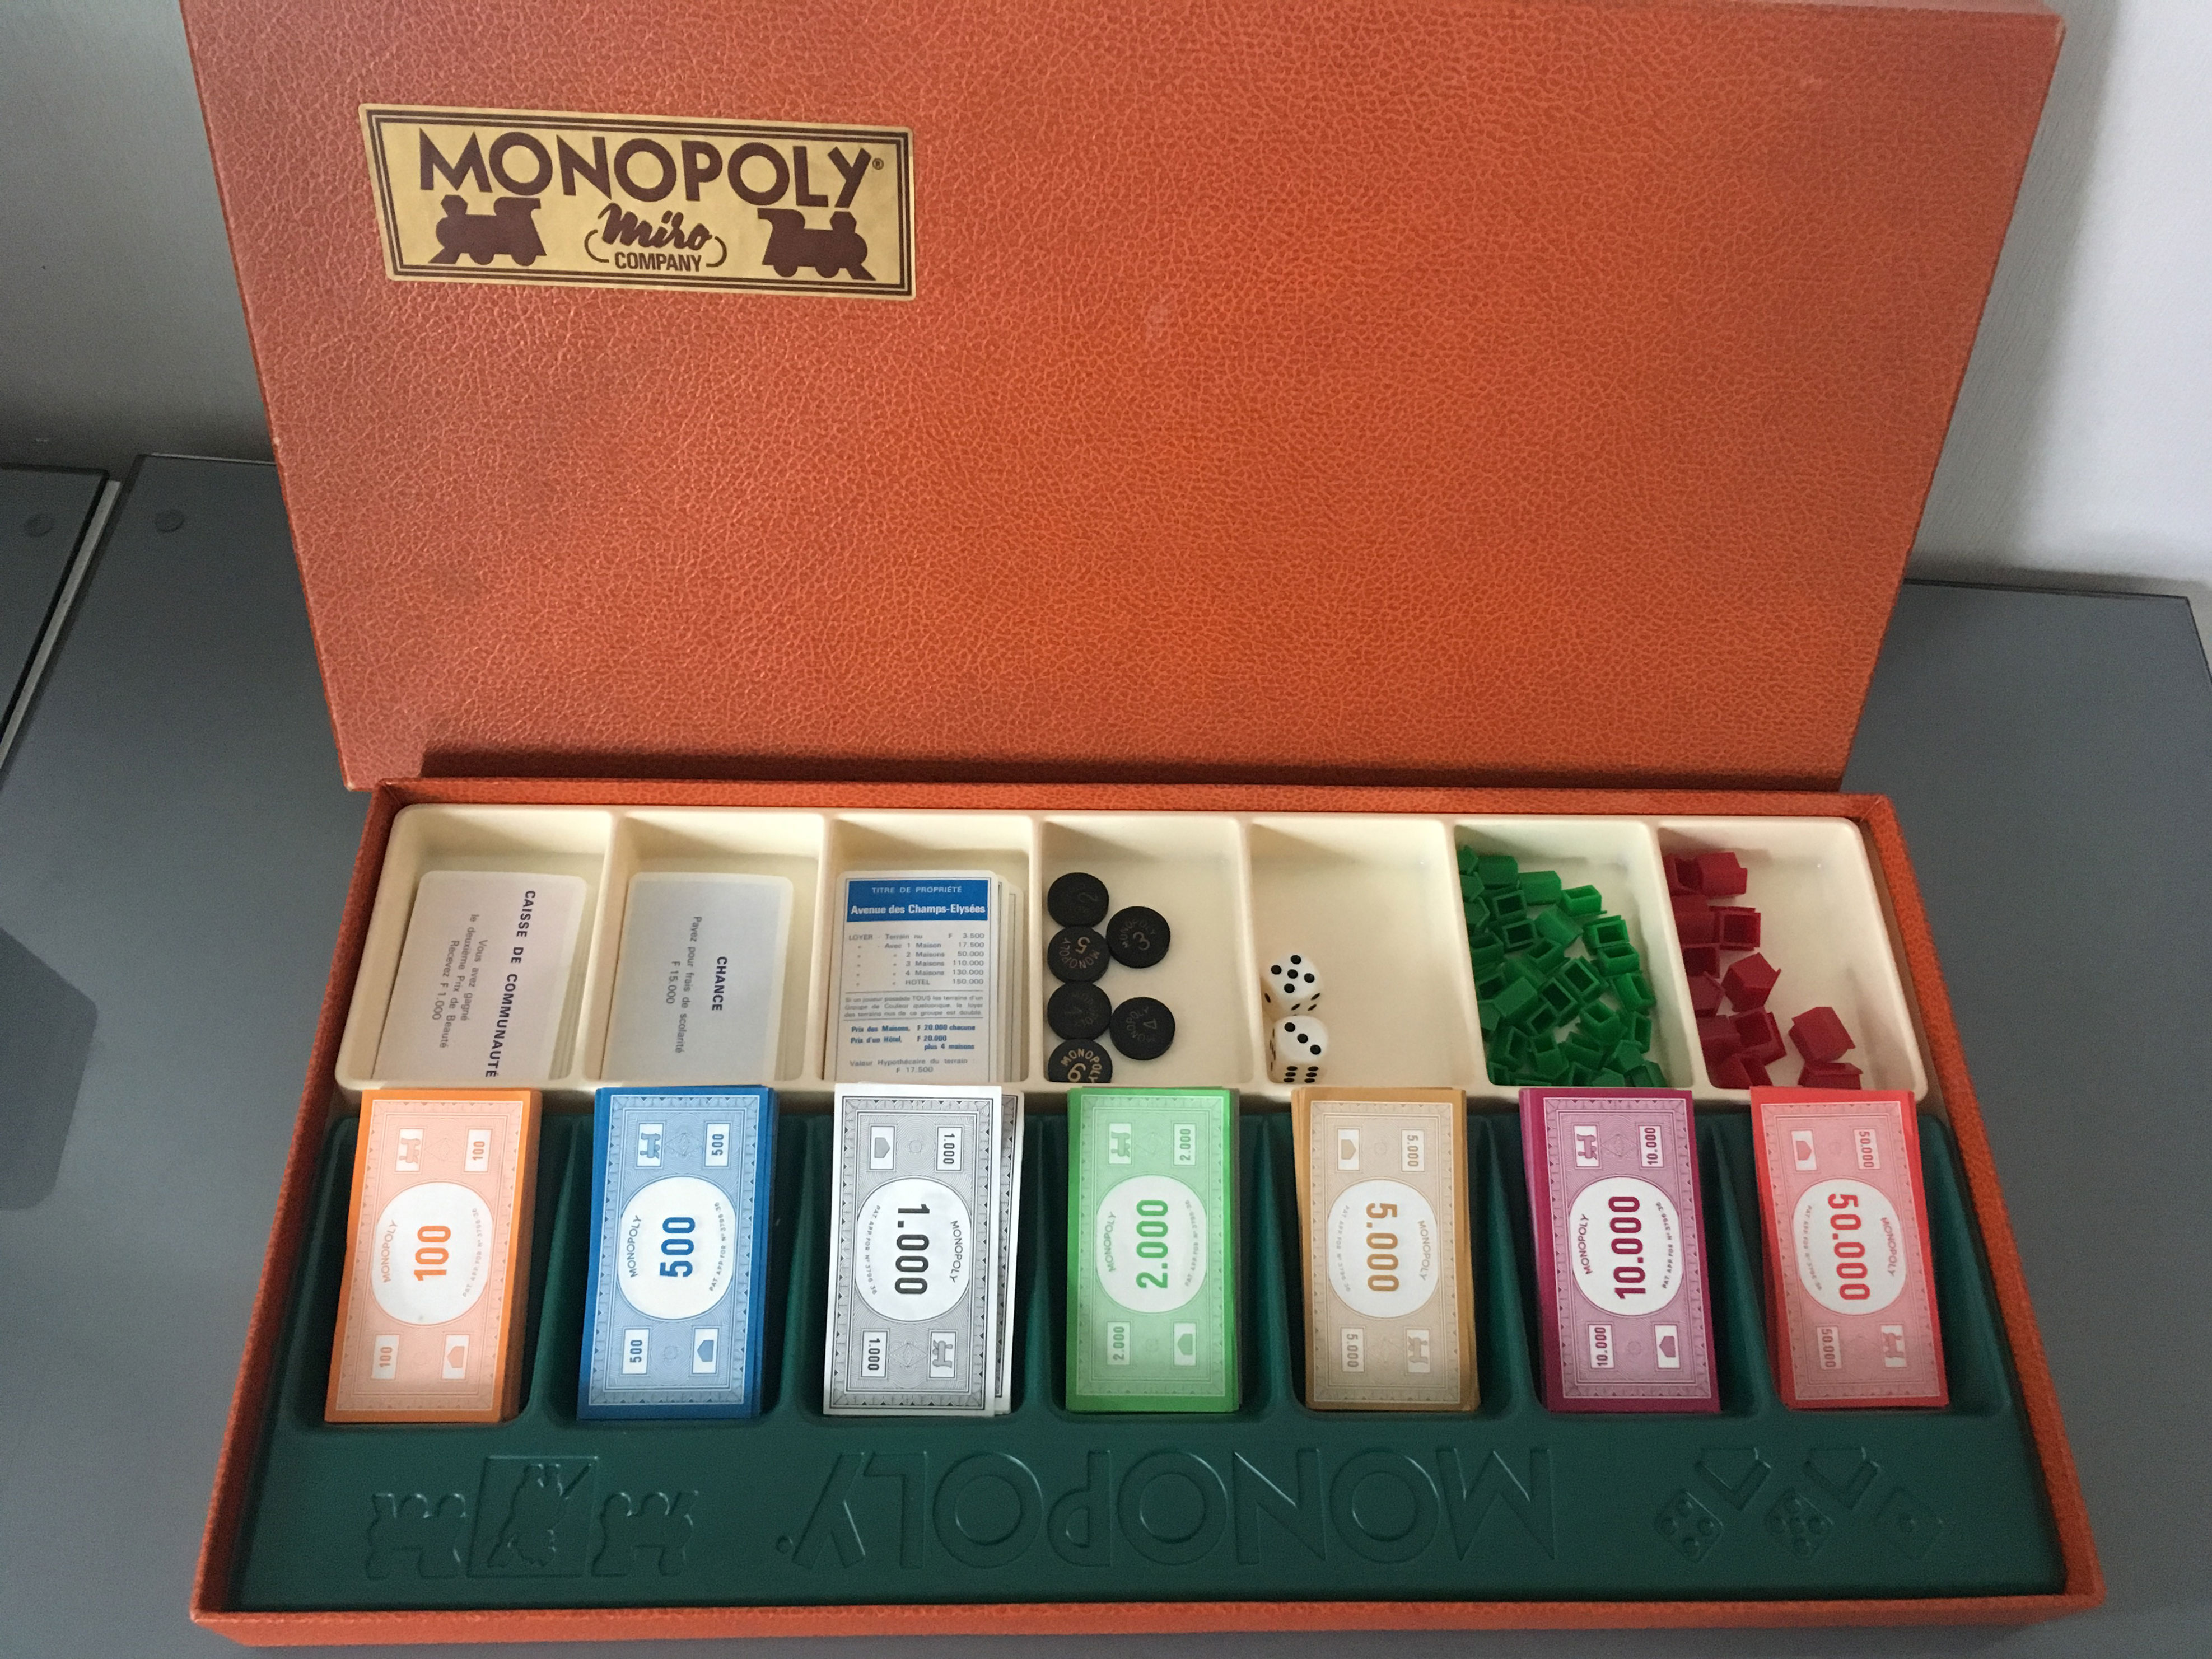 Monopoly edition Miro company